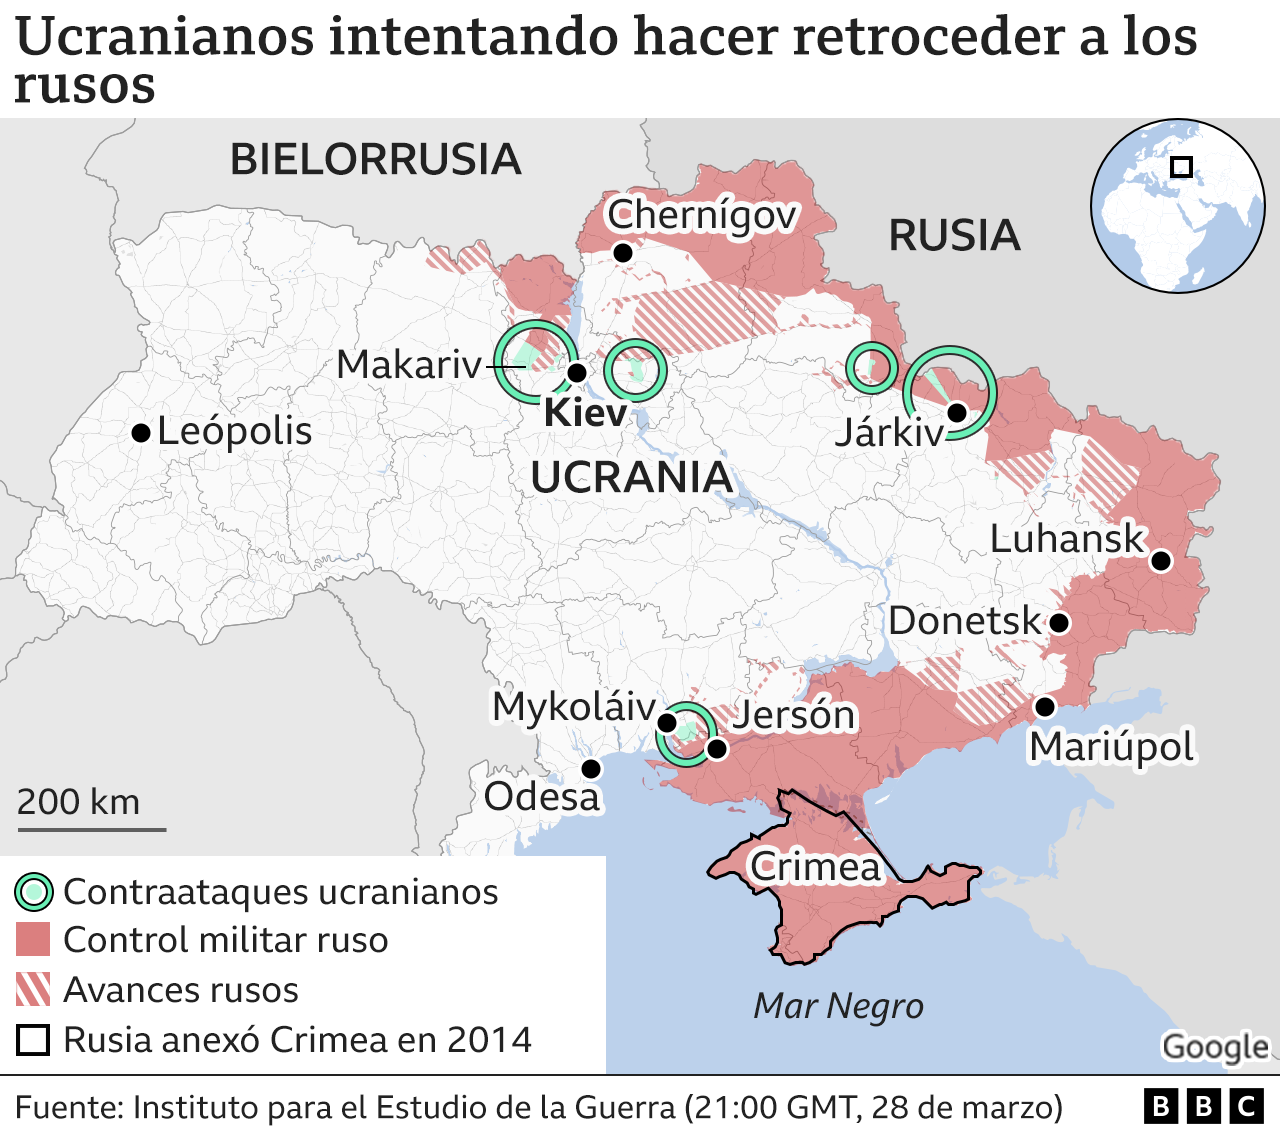 Mapa que muestra las zonas de control militar ruso en Ucrania, las zonas de avance y las de contraataque ucraniano.